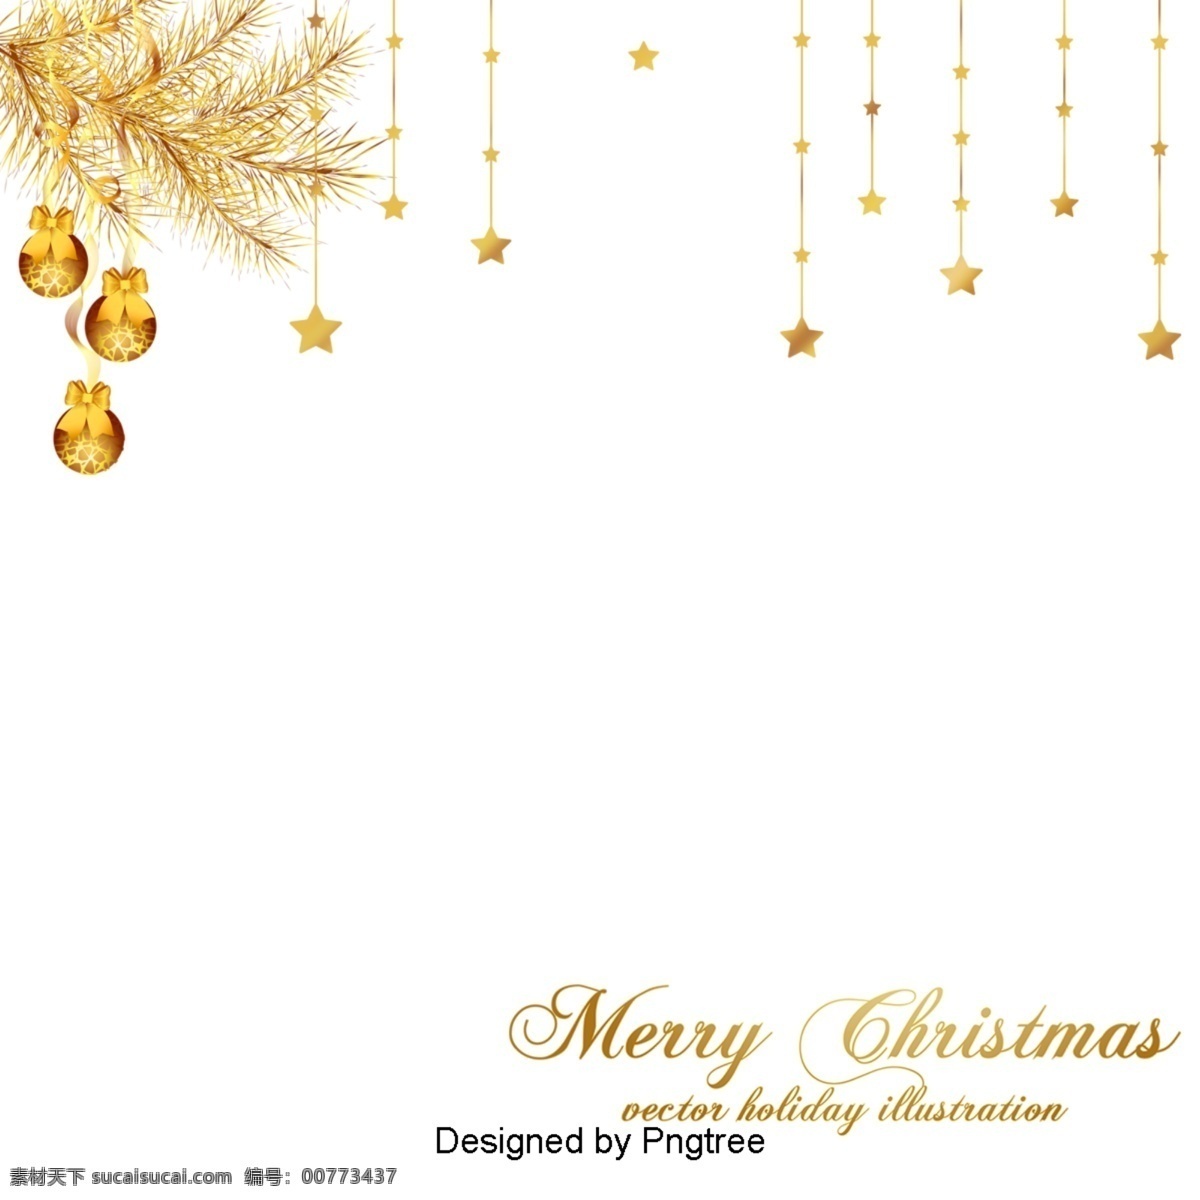 灰色 白色 背景 黑色 圣诞 风格 圣诞树 明星 黄金 礼品袋